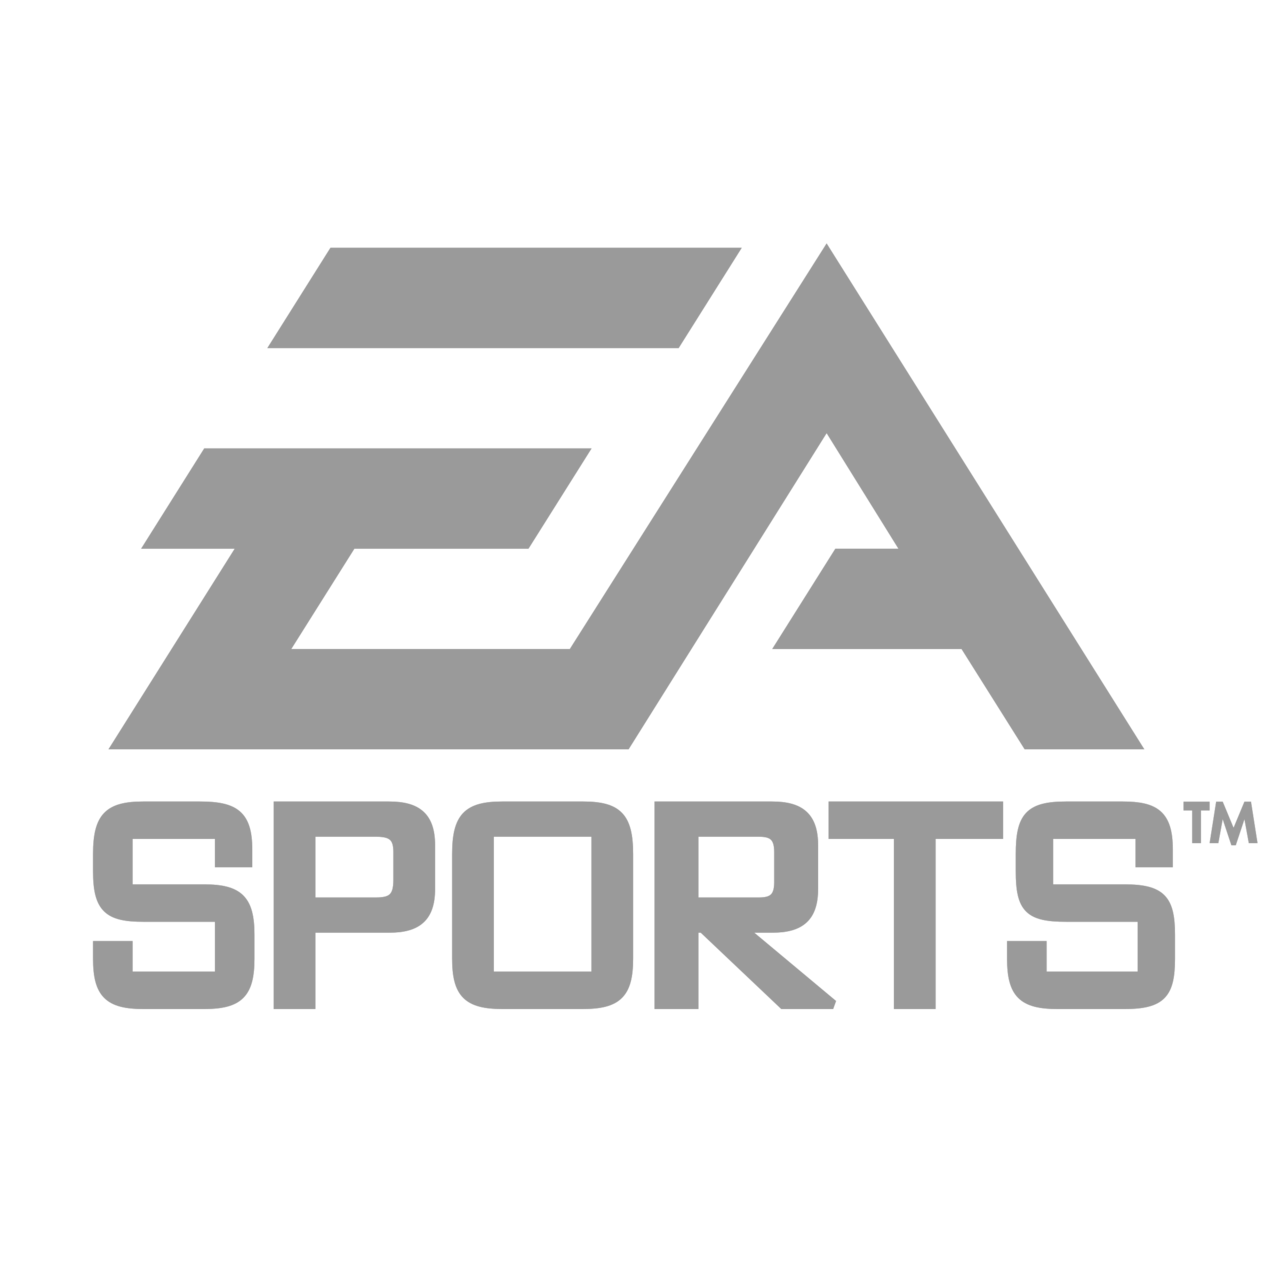 ea sports logo